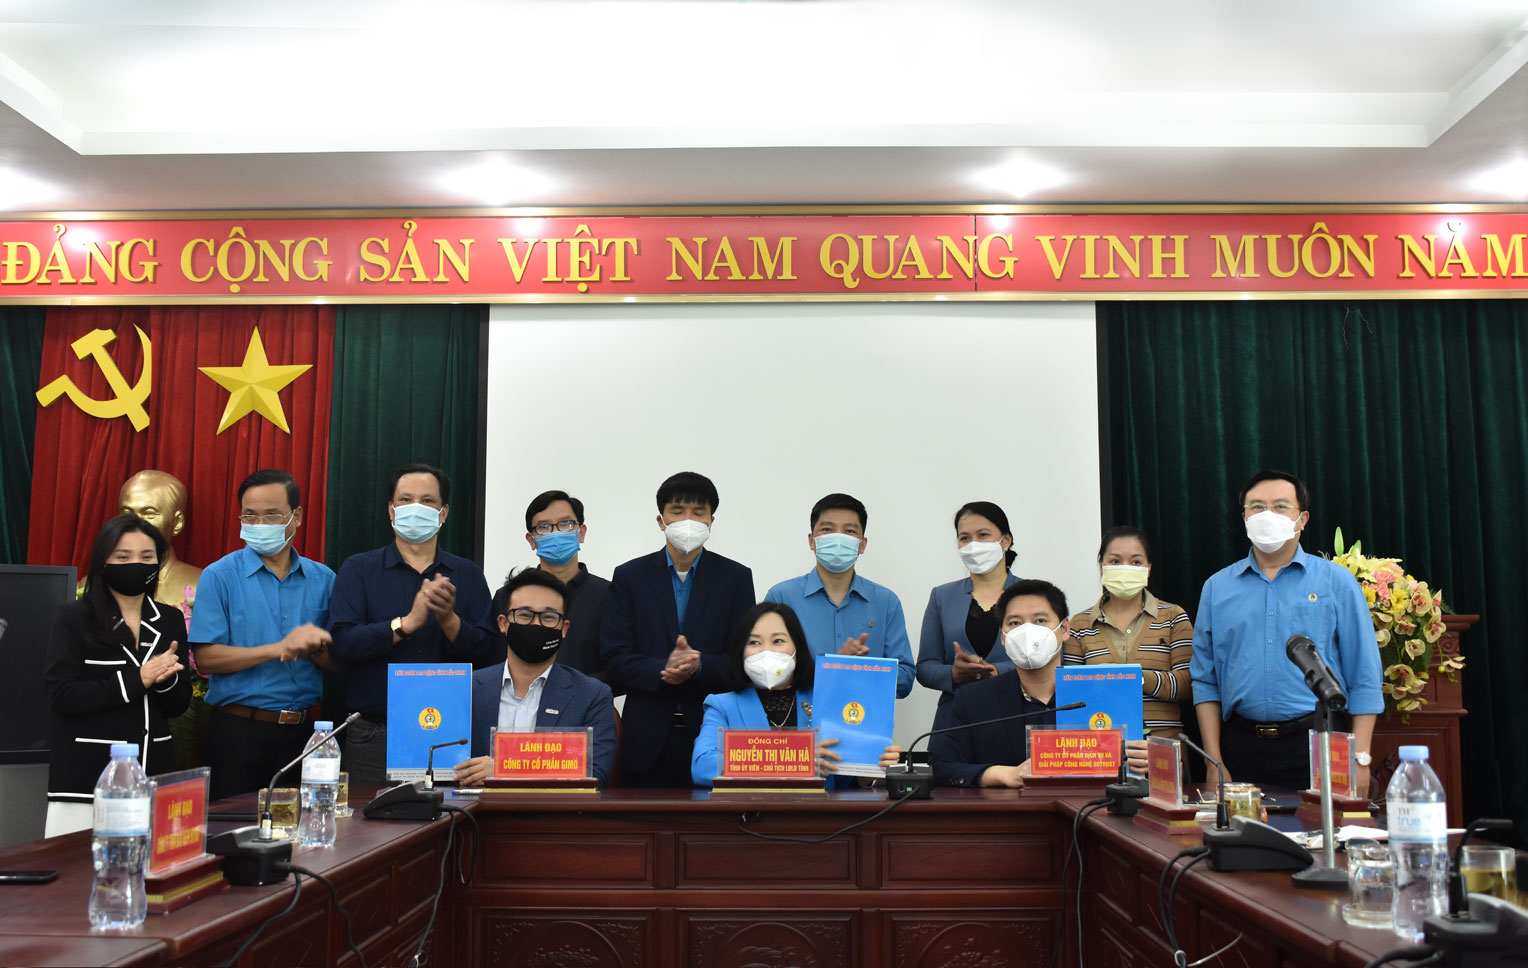 GIMO ký kết hợp tác với Liên đoàn Lao động Bắc Ninh, nâng cao đời sống cho người lao động